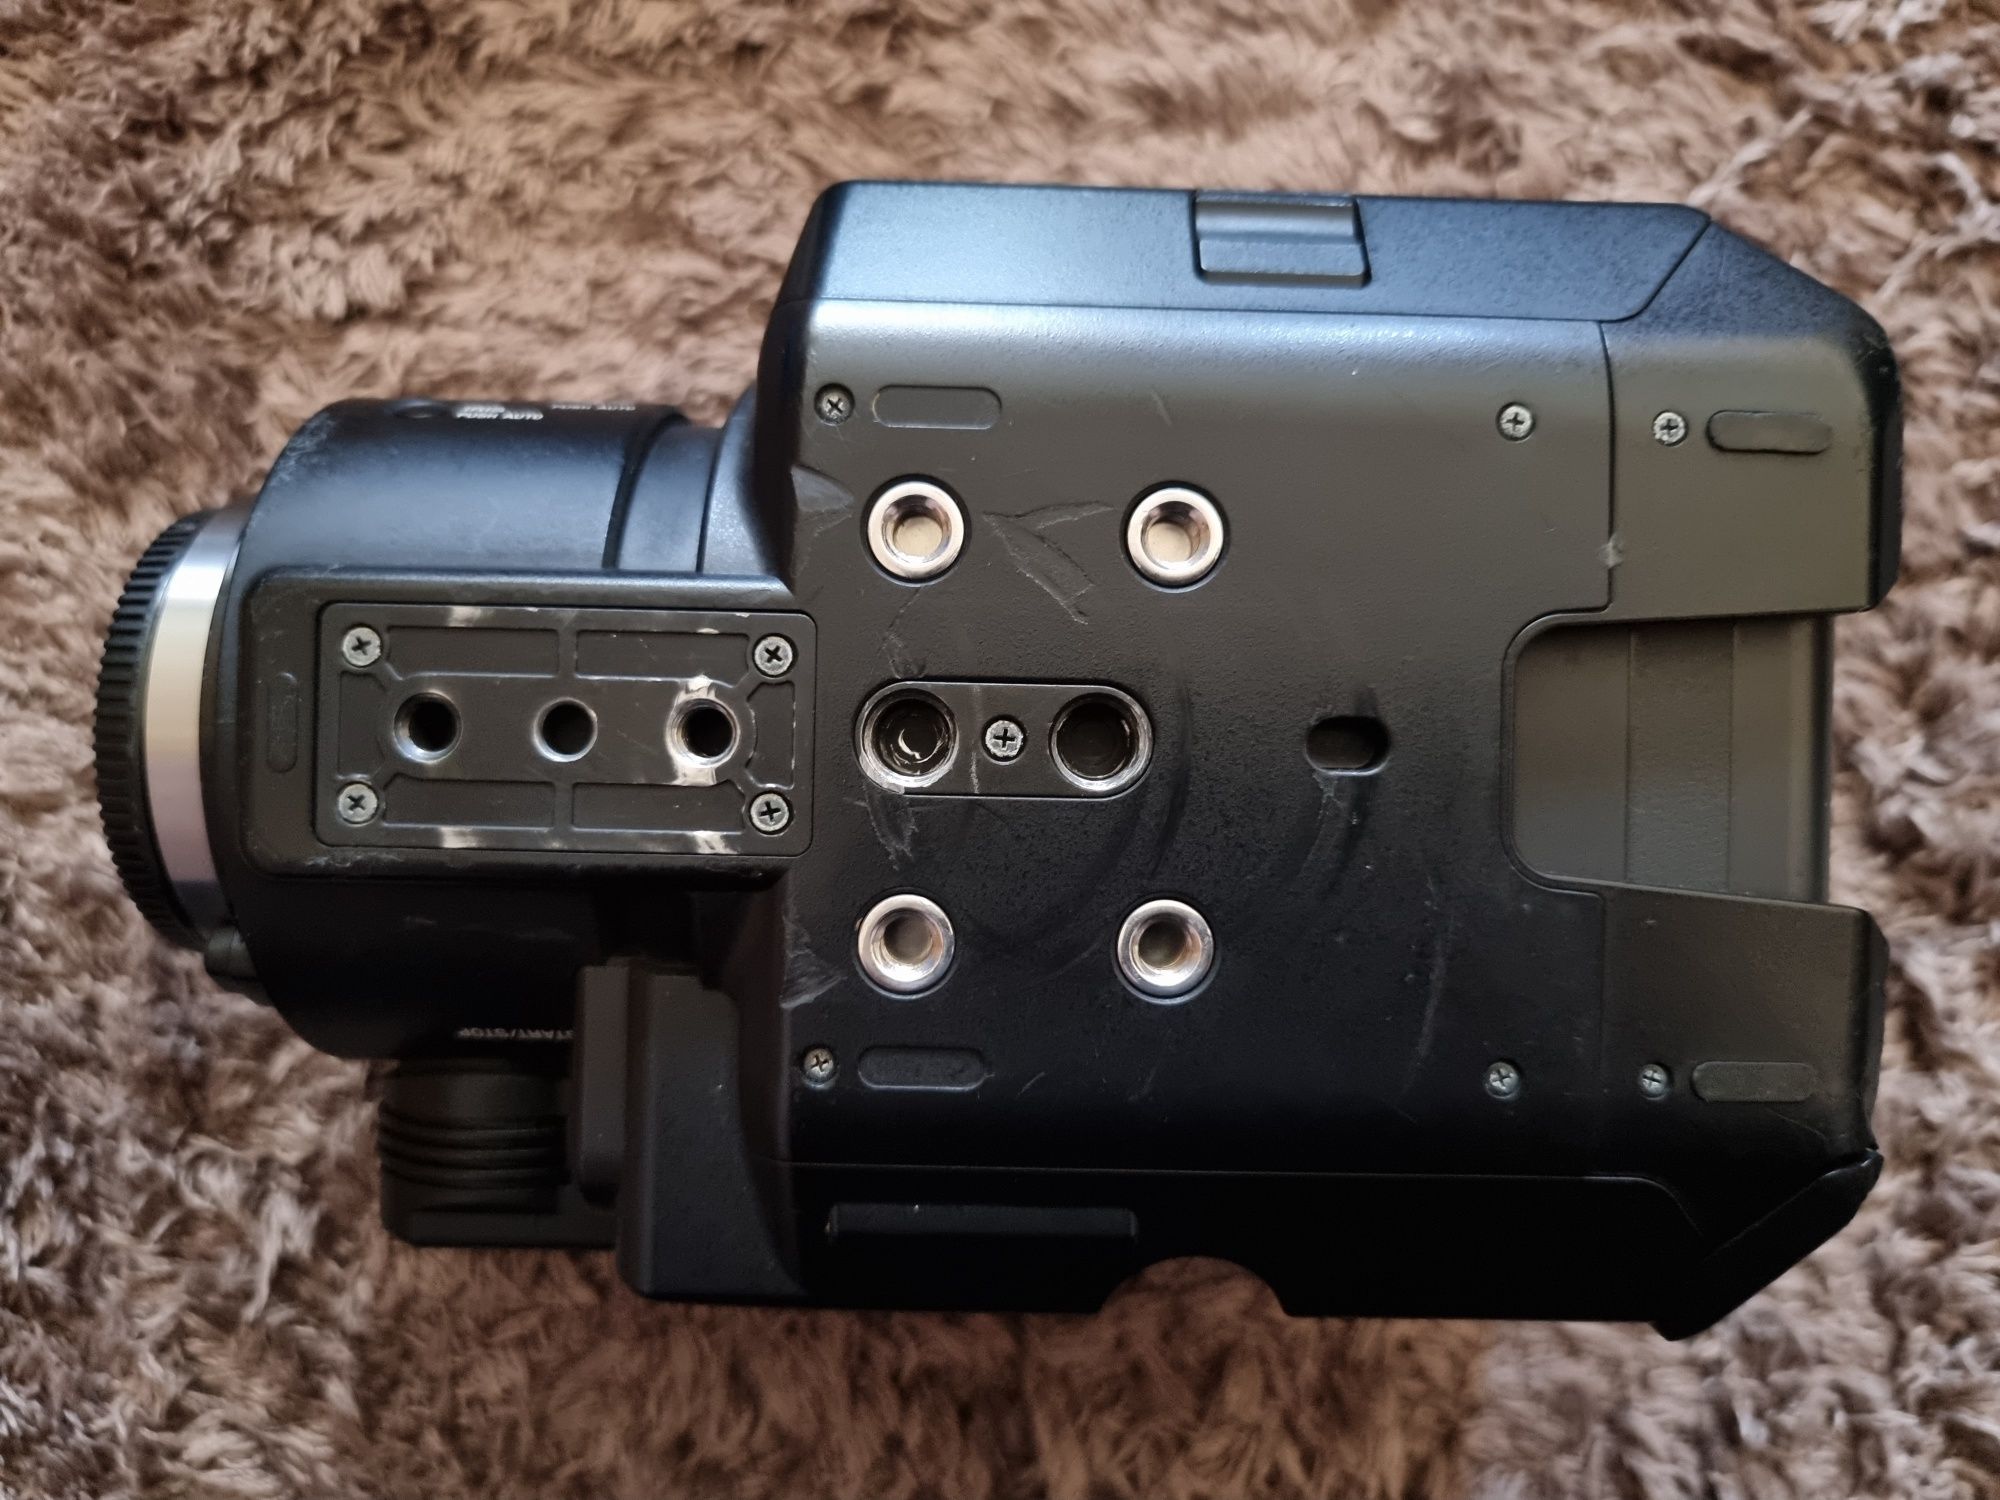 Camera profesionala Sony NEX-FS100